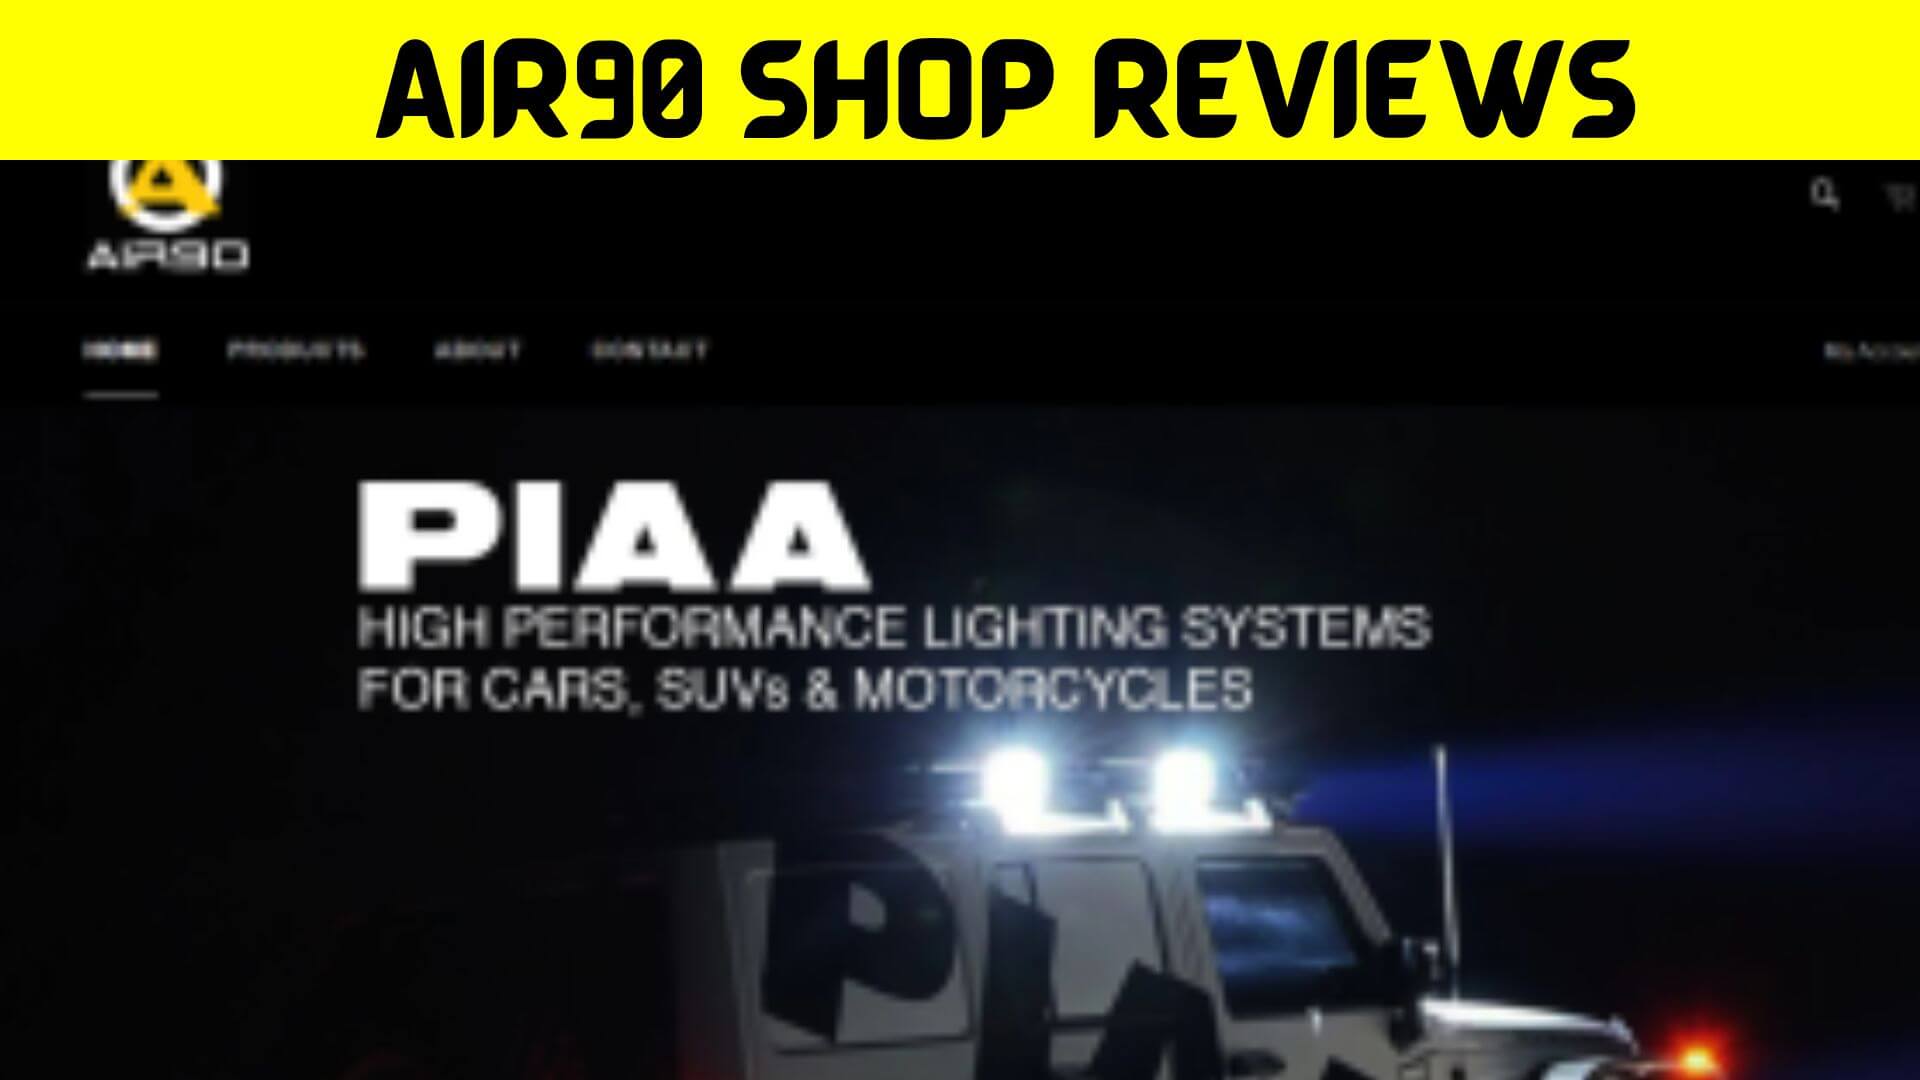 Air90 Shop Reviews